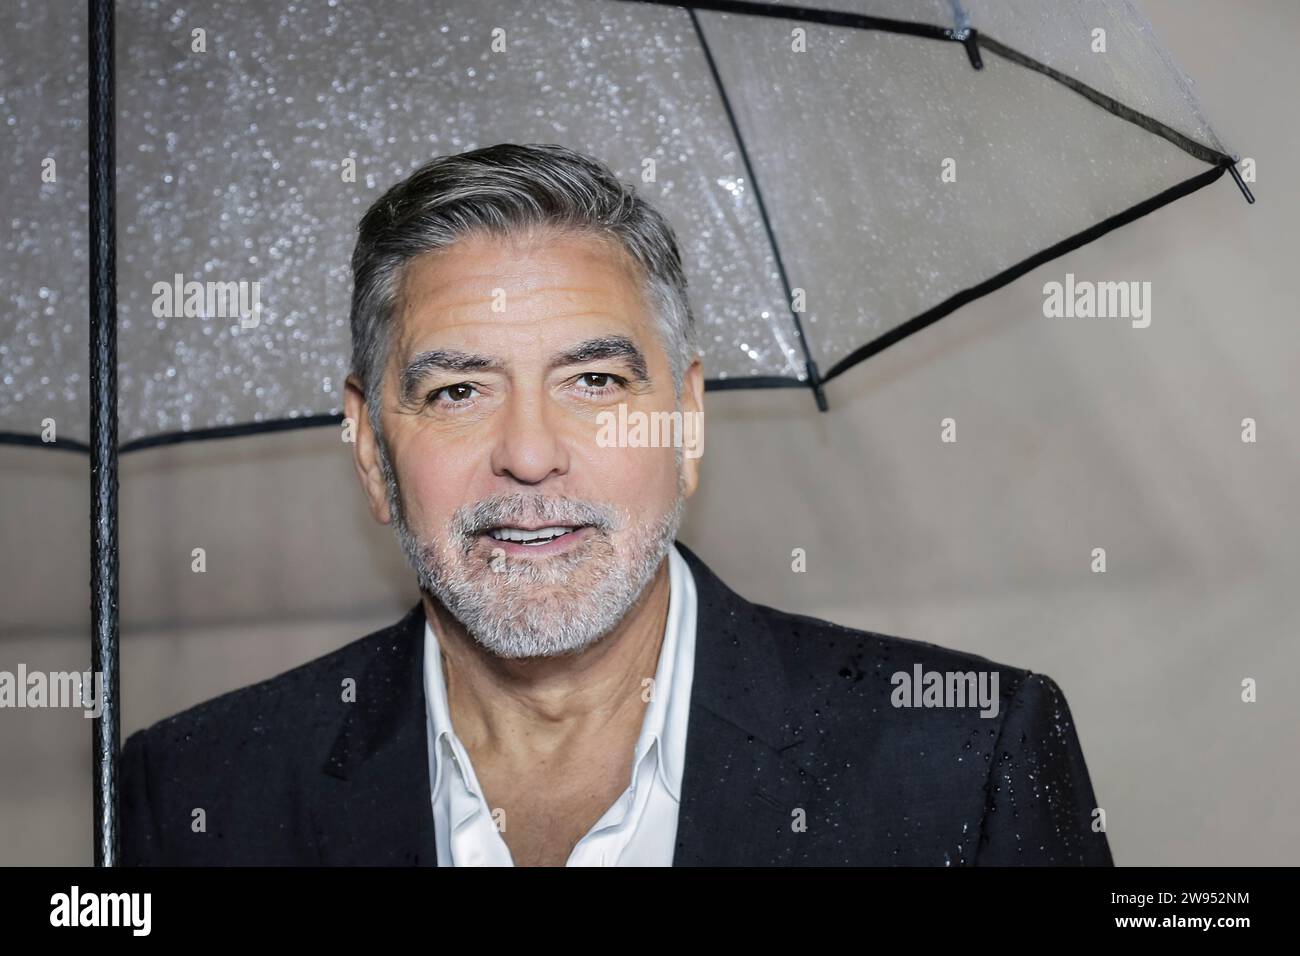 George Clooney, actor estadounidense, estrella de Hollywood y director, asiste al estreno de 'The Boys in the Boat' en el Reino Unido, Londres Foto de stock